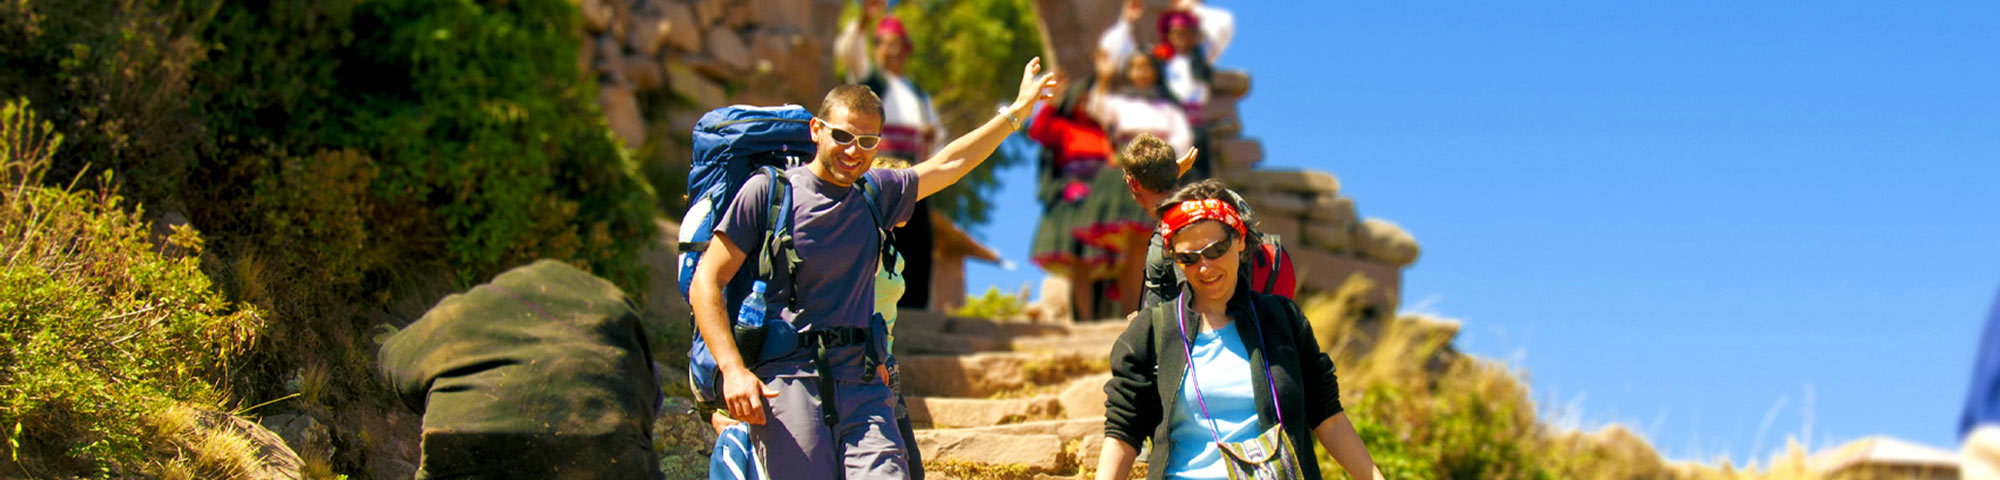 Turistas seguros gracias al app Tourist Police Perú